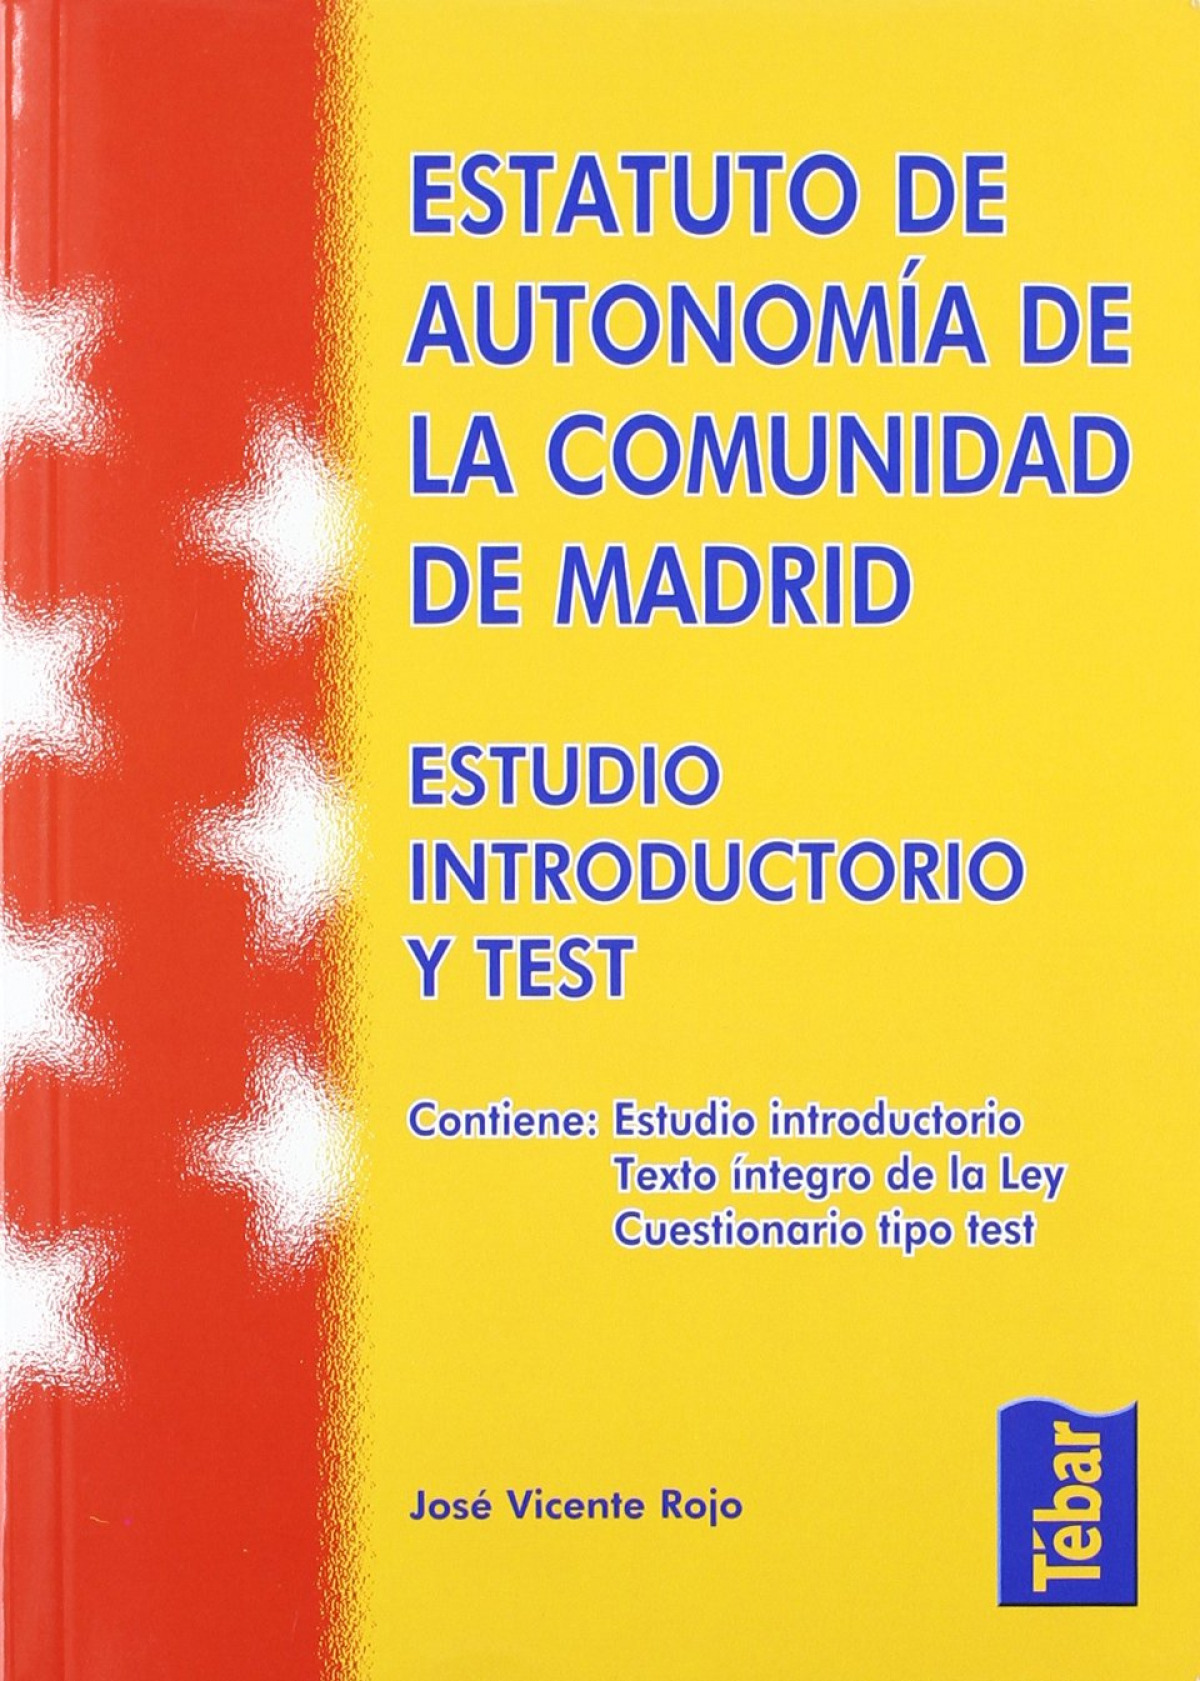 Estatuto de autonomÍa de la comunidad de madrid. estudio introductorio - Rojo, José Vicente